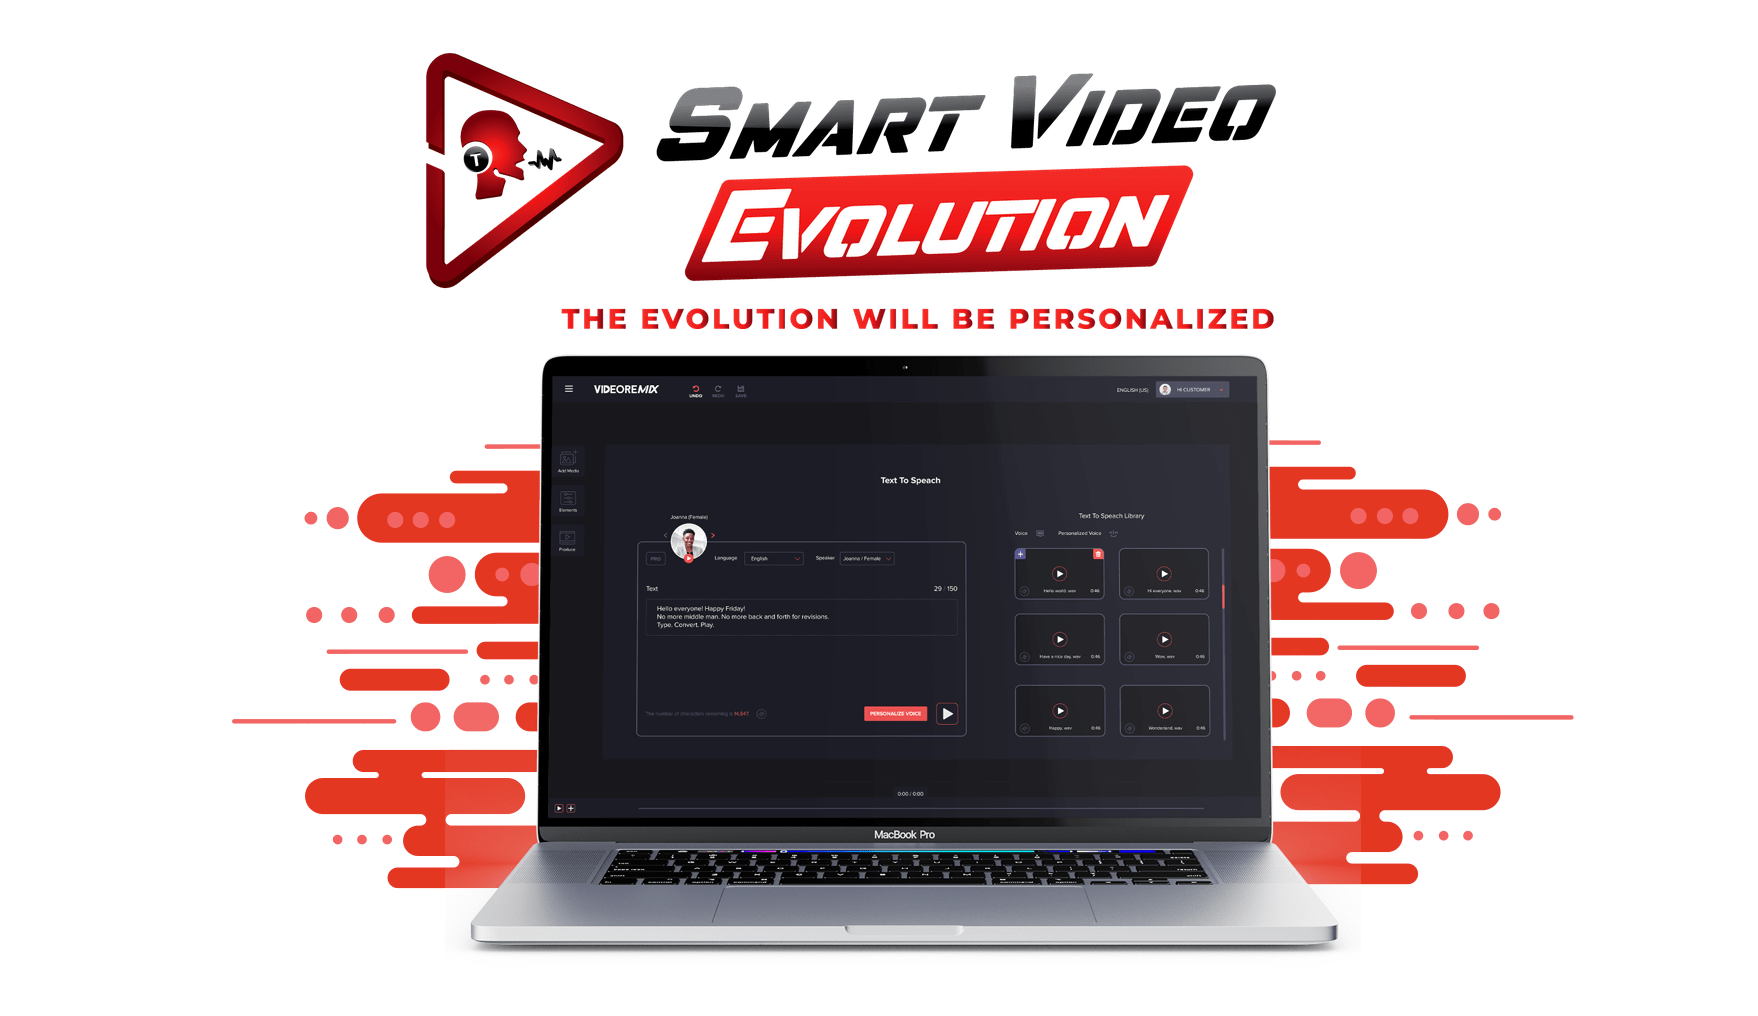 Cliquez sur ce lien pour accéder à l'offre SmartVideo et à ses bonus: